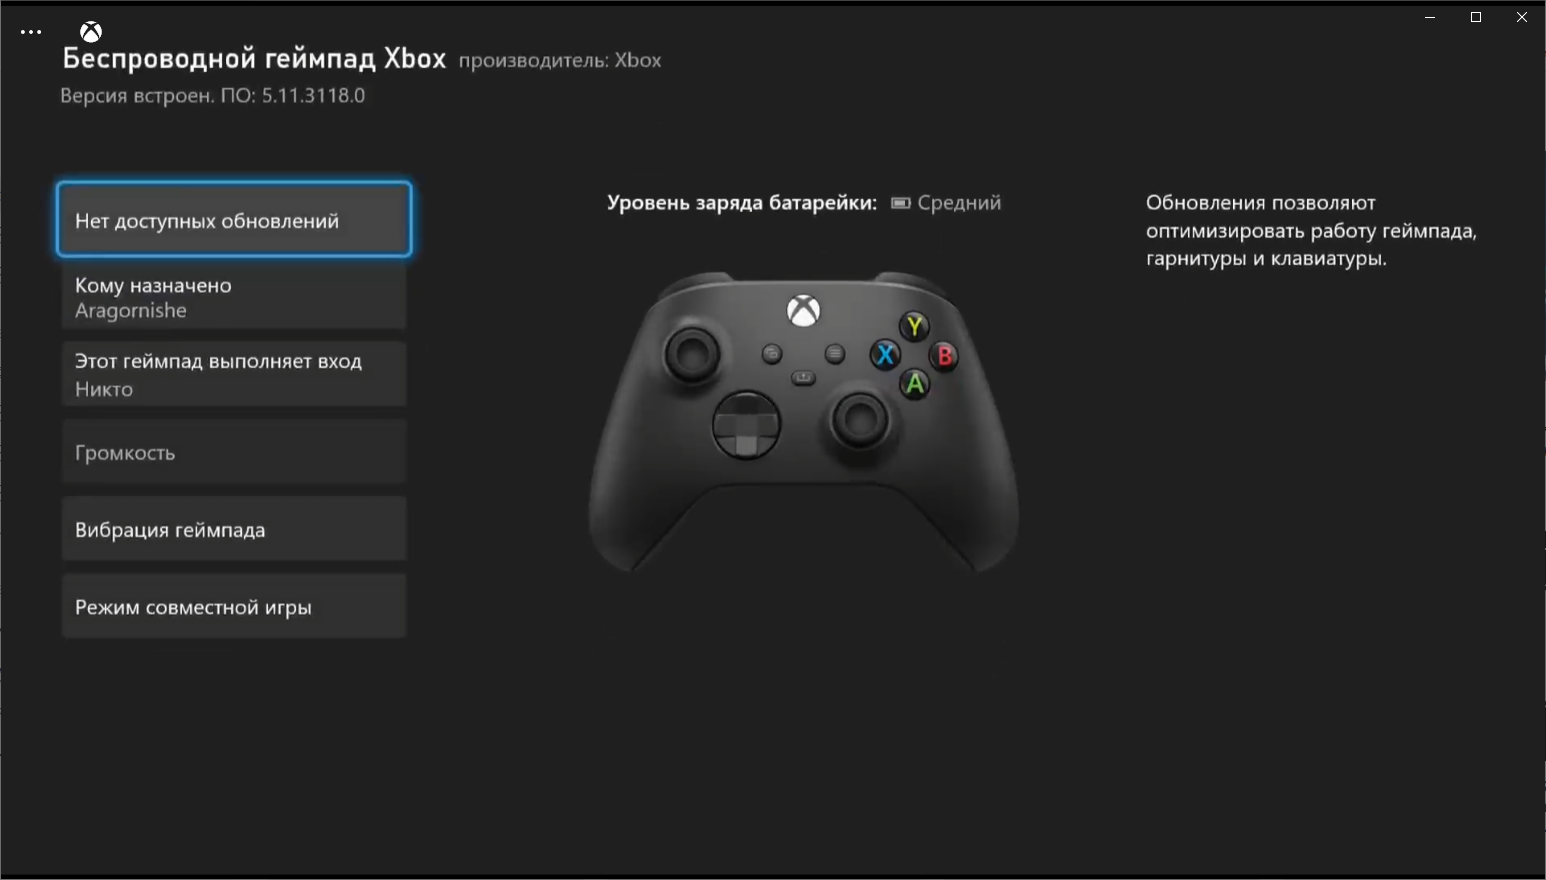 Настроить джойстик xbox. Джойстик Xbox Series управление. Геймпад хбокс Сериес s. Как отключить вибрацию на джойстике Xbox Series s. Xbox Series s геймпад управление кнопки.